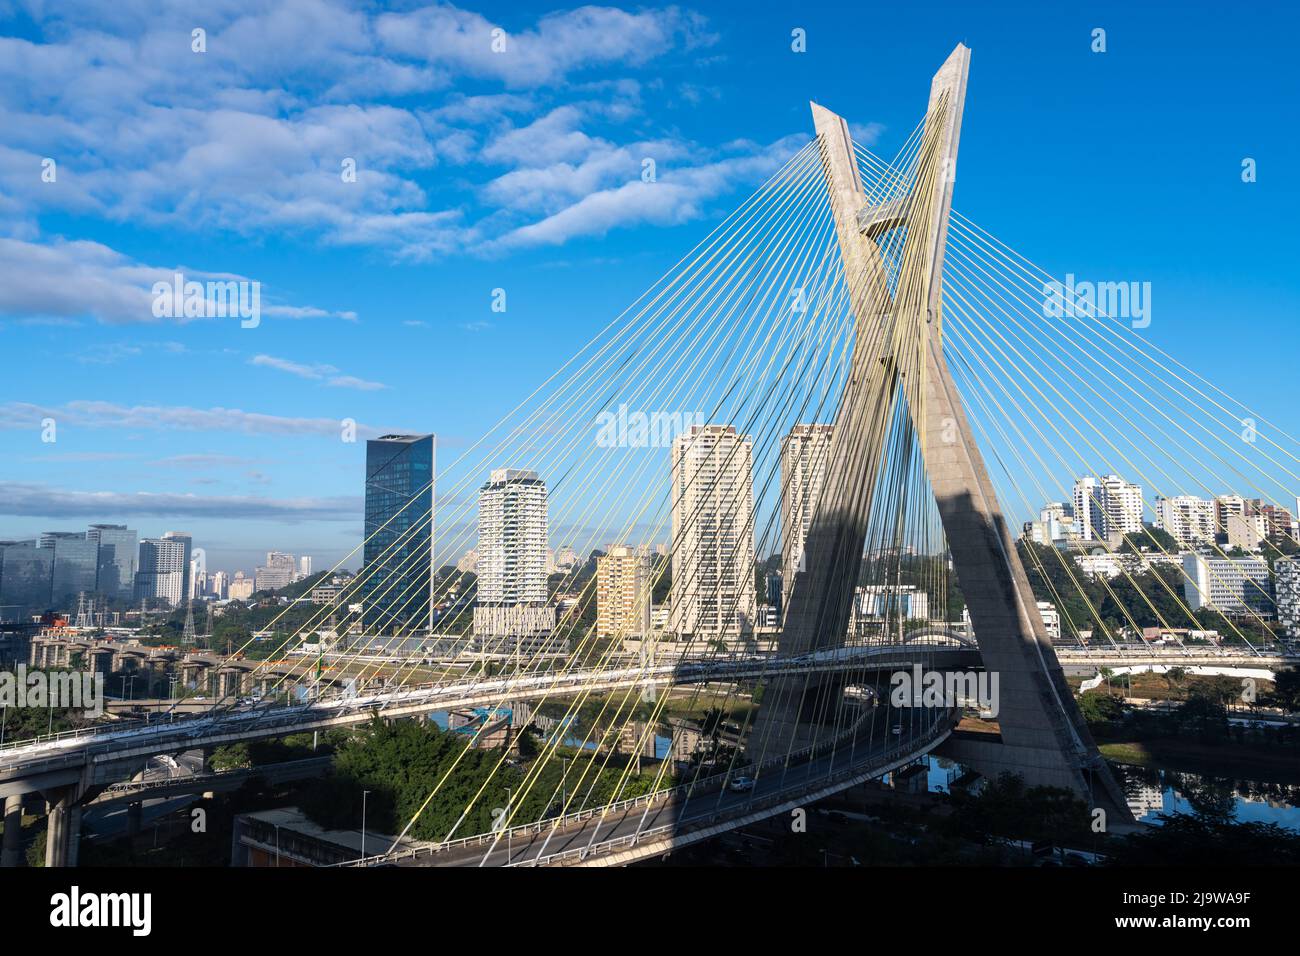 Vue aérienne sur la ville de Sao Paulo, l'avenue marginal Pinheiros, le pont moderne de Cable, la rivière Pinheiros et les bâtiments d'entreprise, Brésil. Banque D'Images